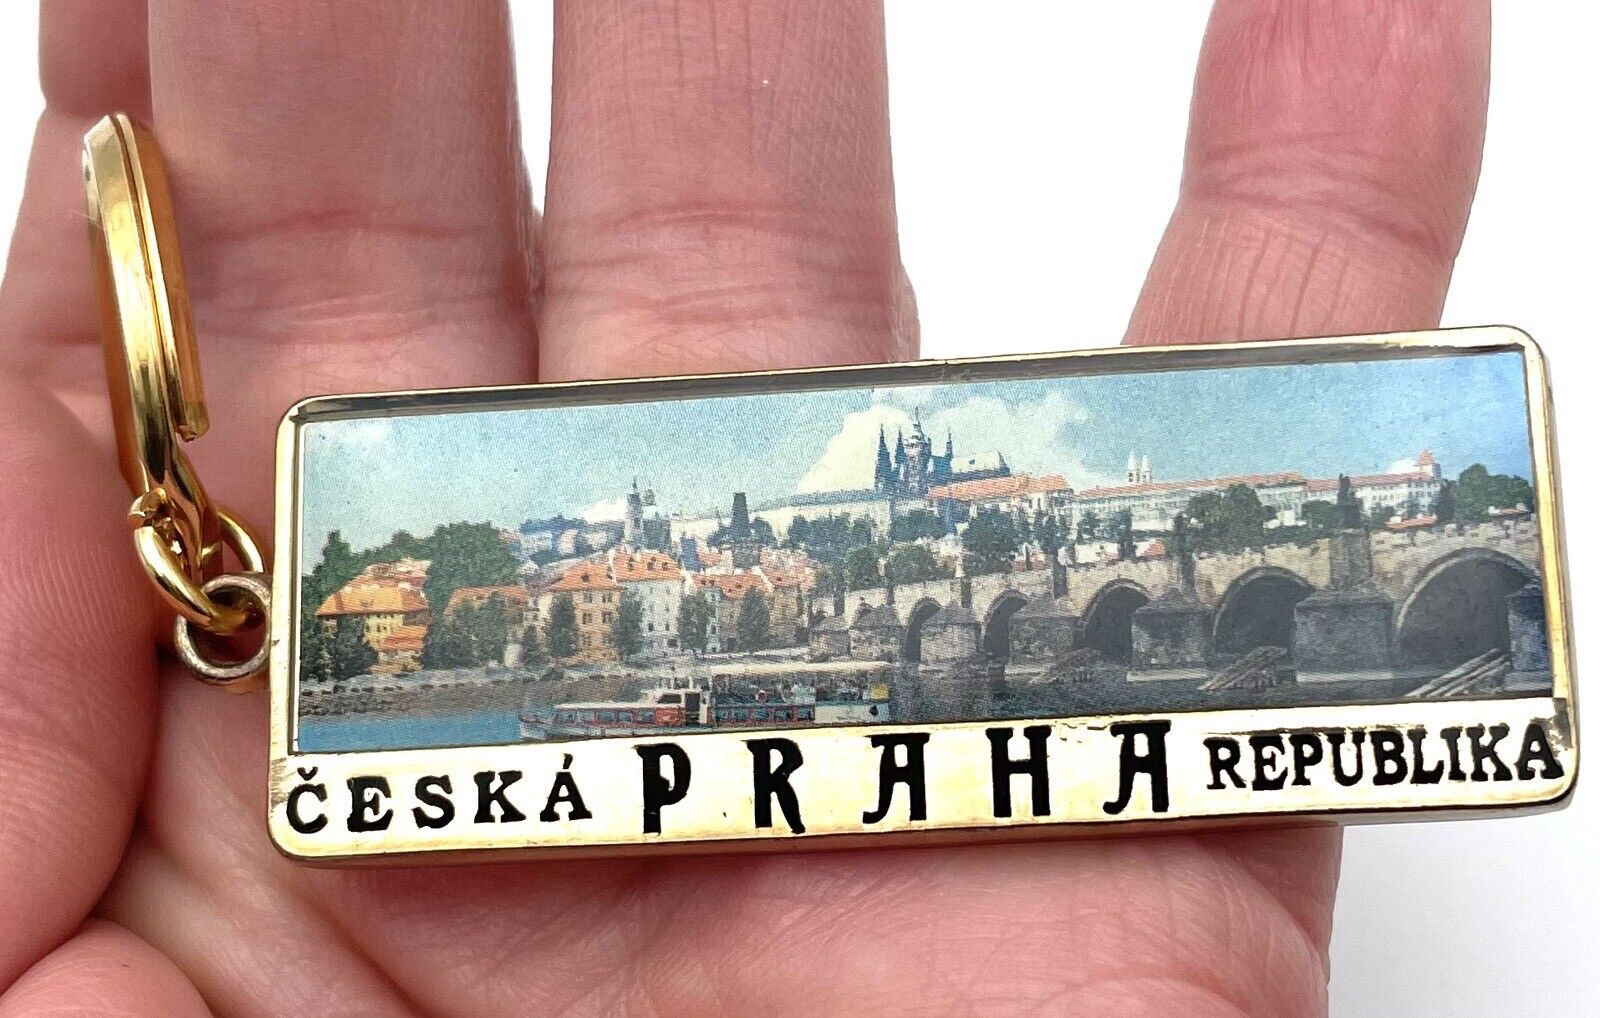 CESKA PRAHA REPUBLIKA Keychain Key Fob Collectible Souvenir Czech Republic